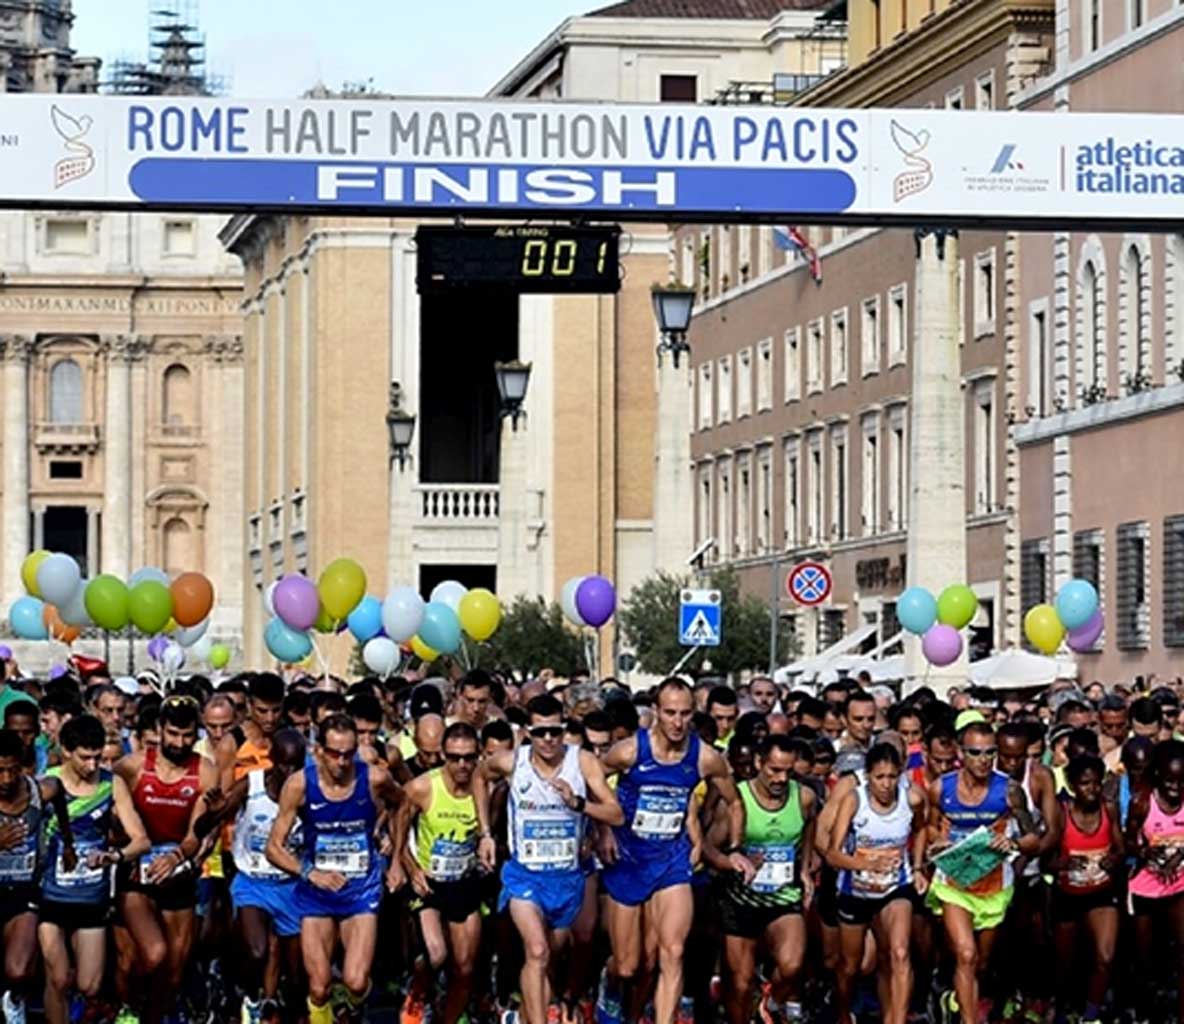 mezza maratona roma, via pacis